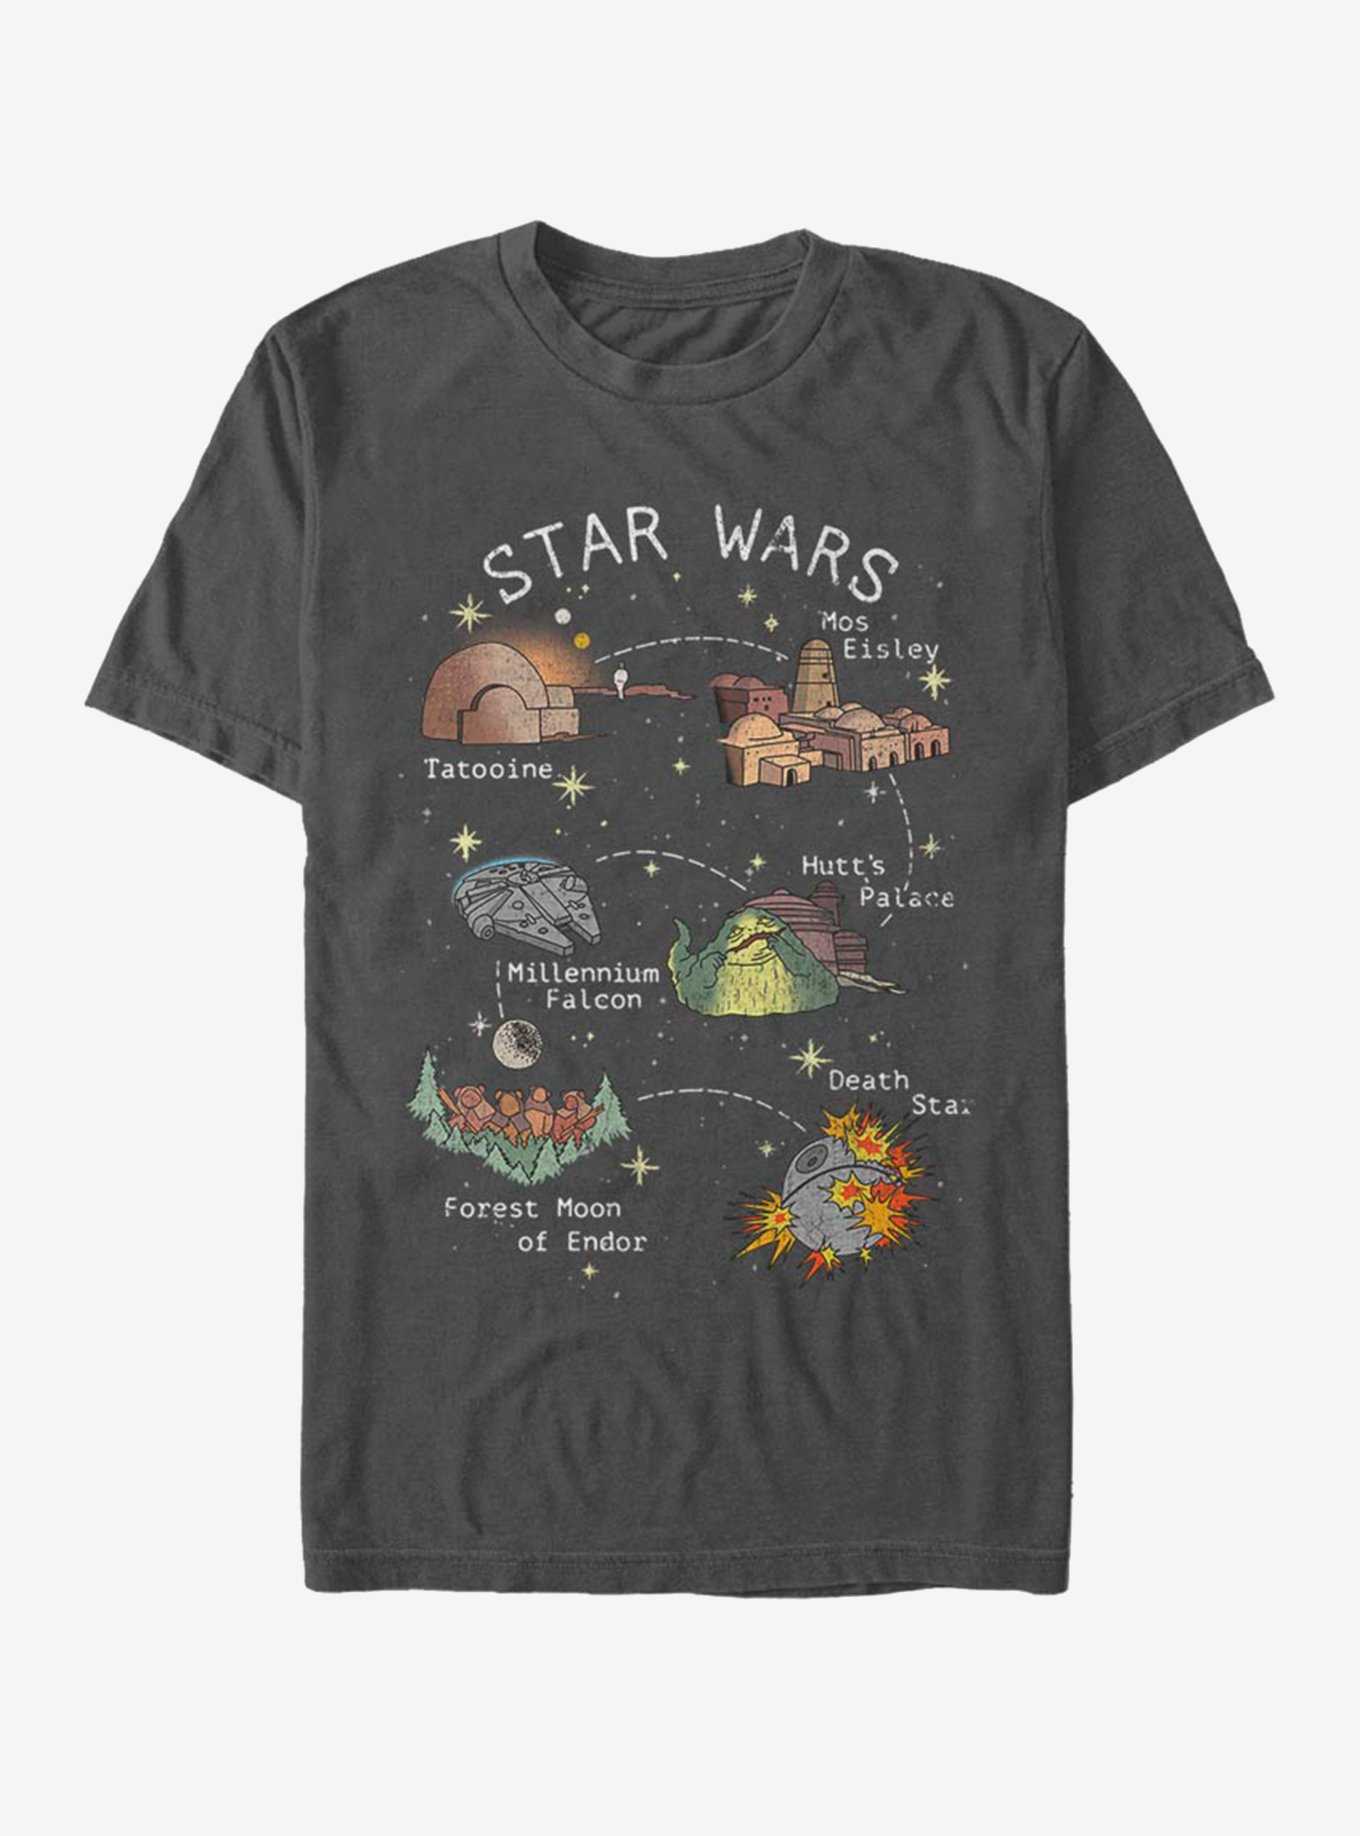 Star Wars Story Map T-Shirt, , hi-res